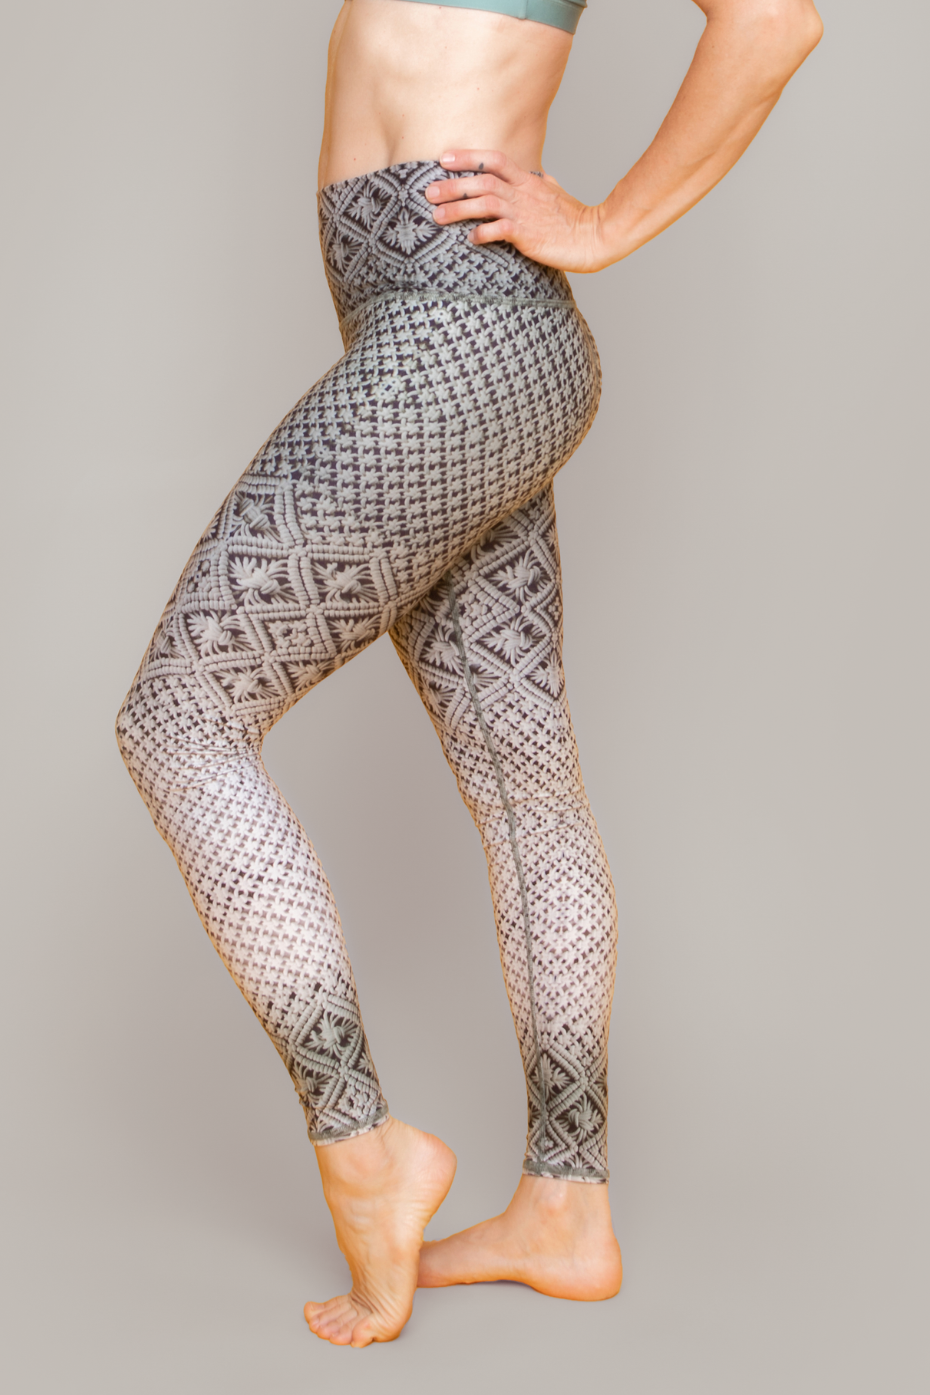 Boho Botanical High Waisted Yoga Leggings (AOP) - AI Art, Workout Leggings